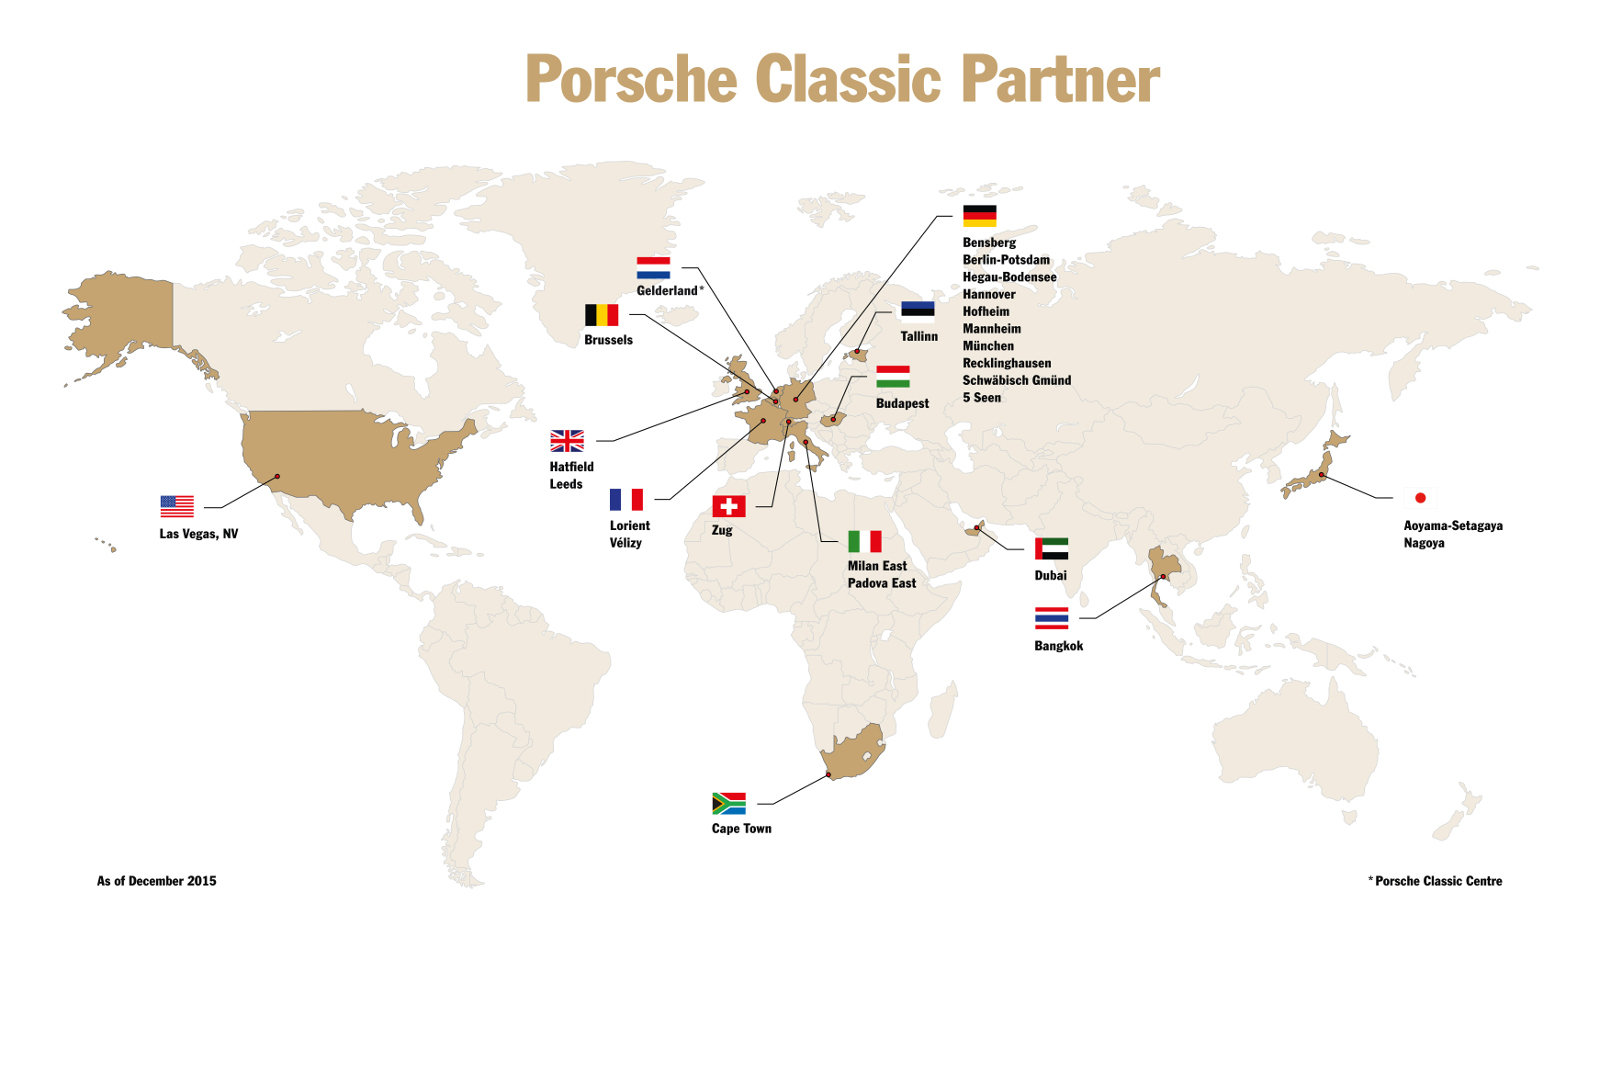 V současné době je po světě 24 partnerů Porsche Classic